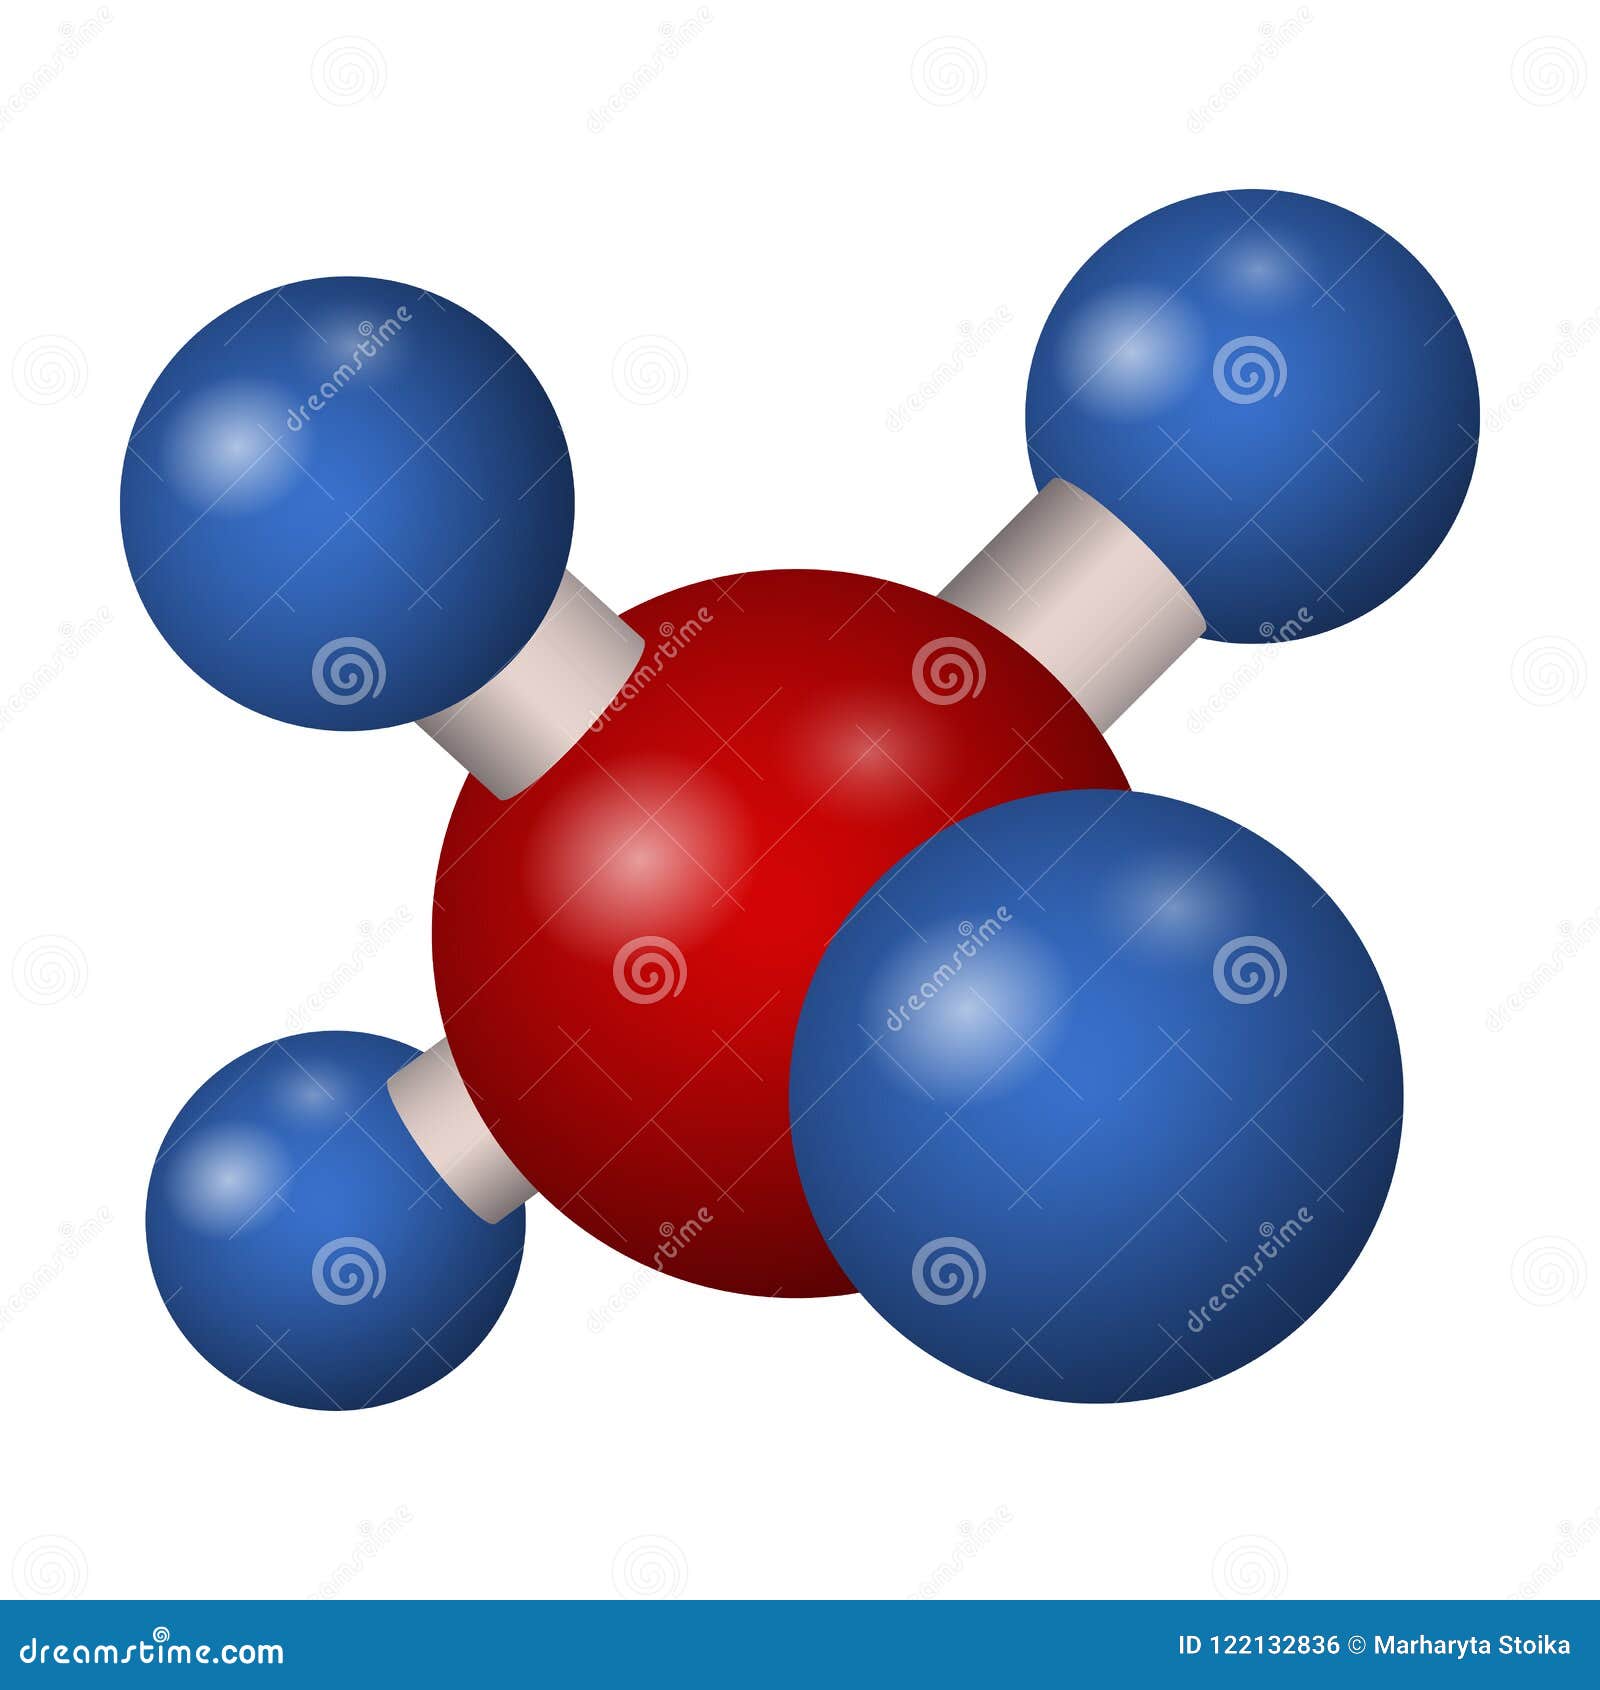 Fórmula química del metano ilustración del vector. Ilustración de carbono -  122132836